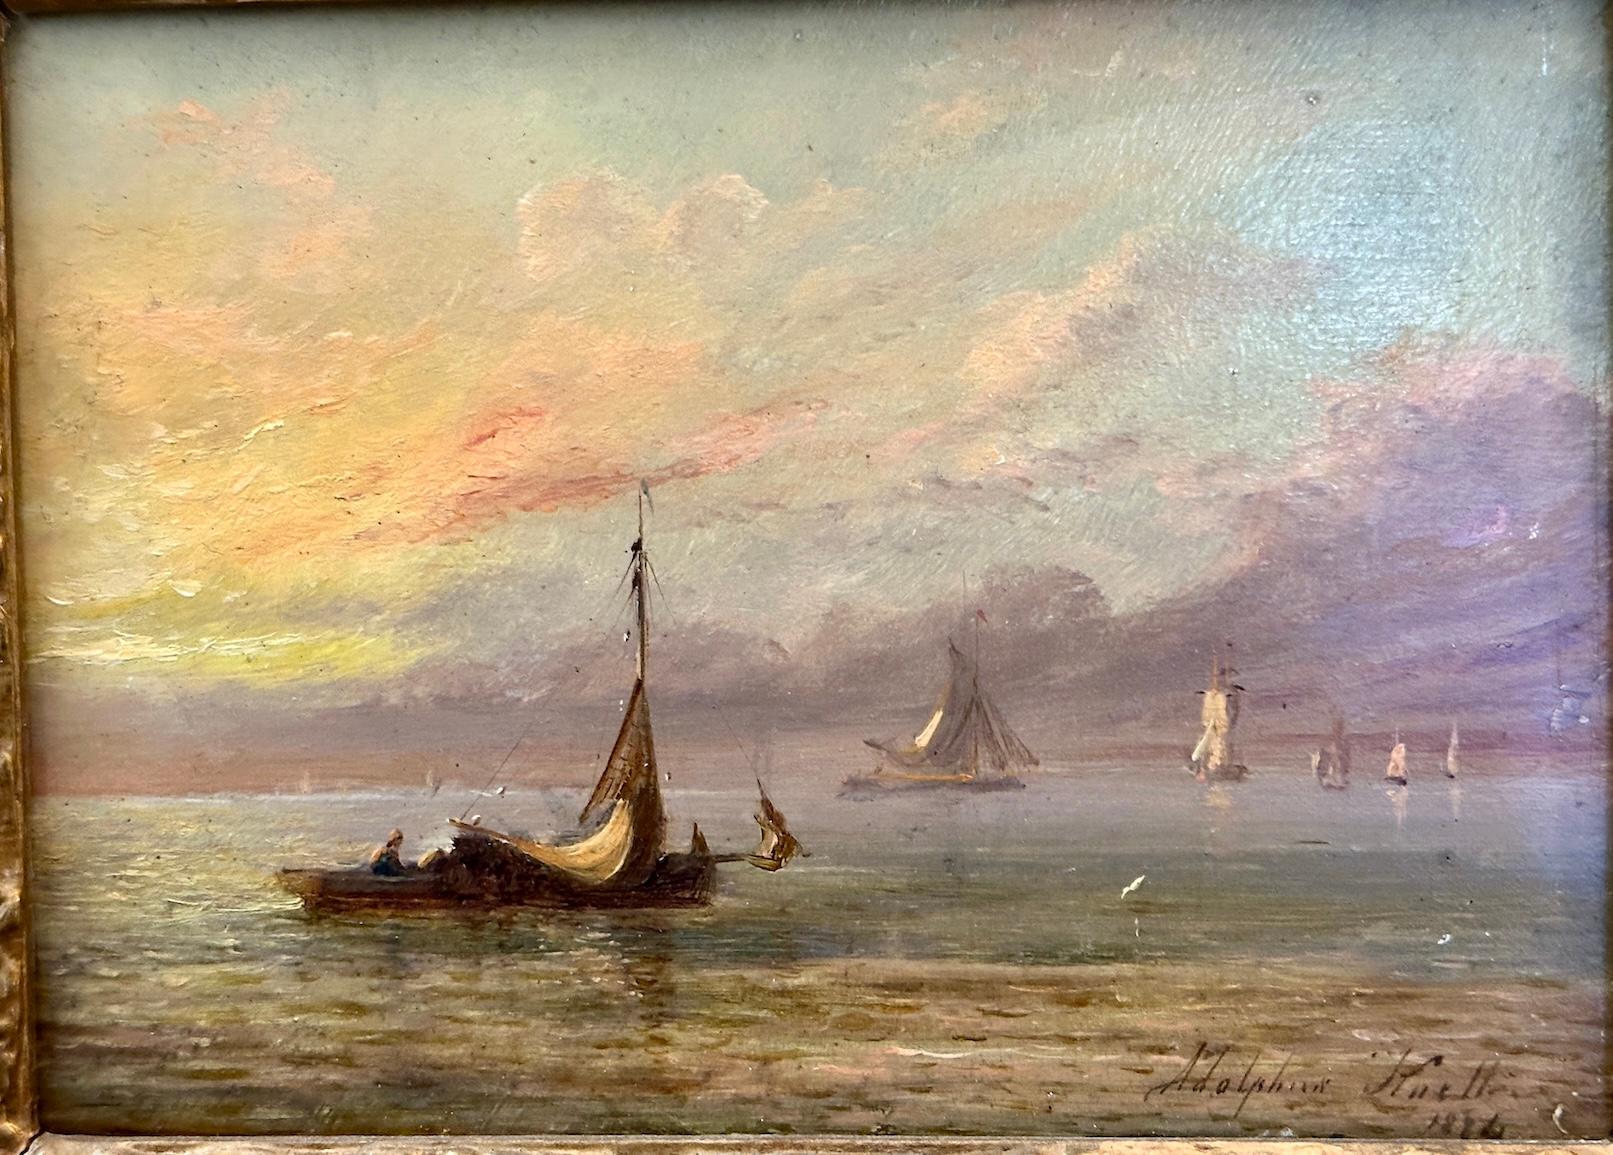 Bateau de pêche anglais du 19e siècle en mer avec lever ou coucher de soleil - Painting de Adolphus Knell